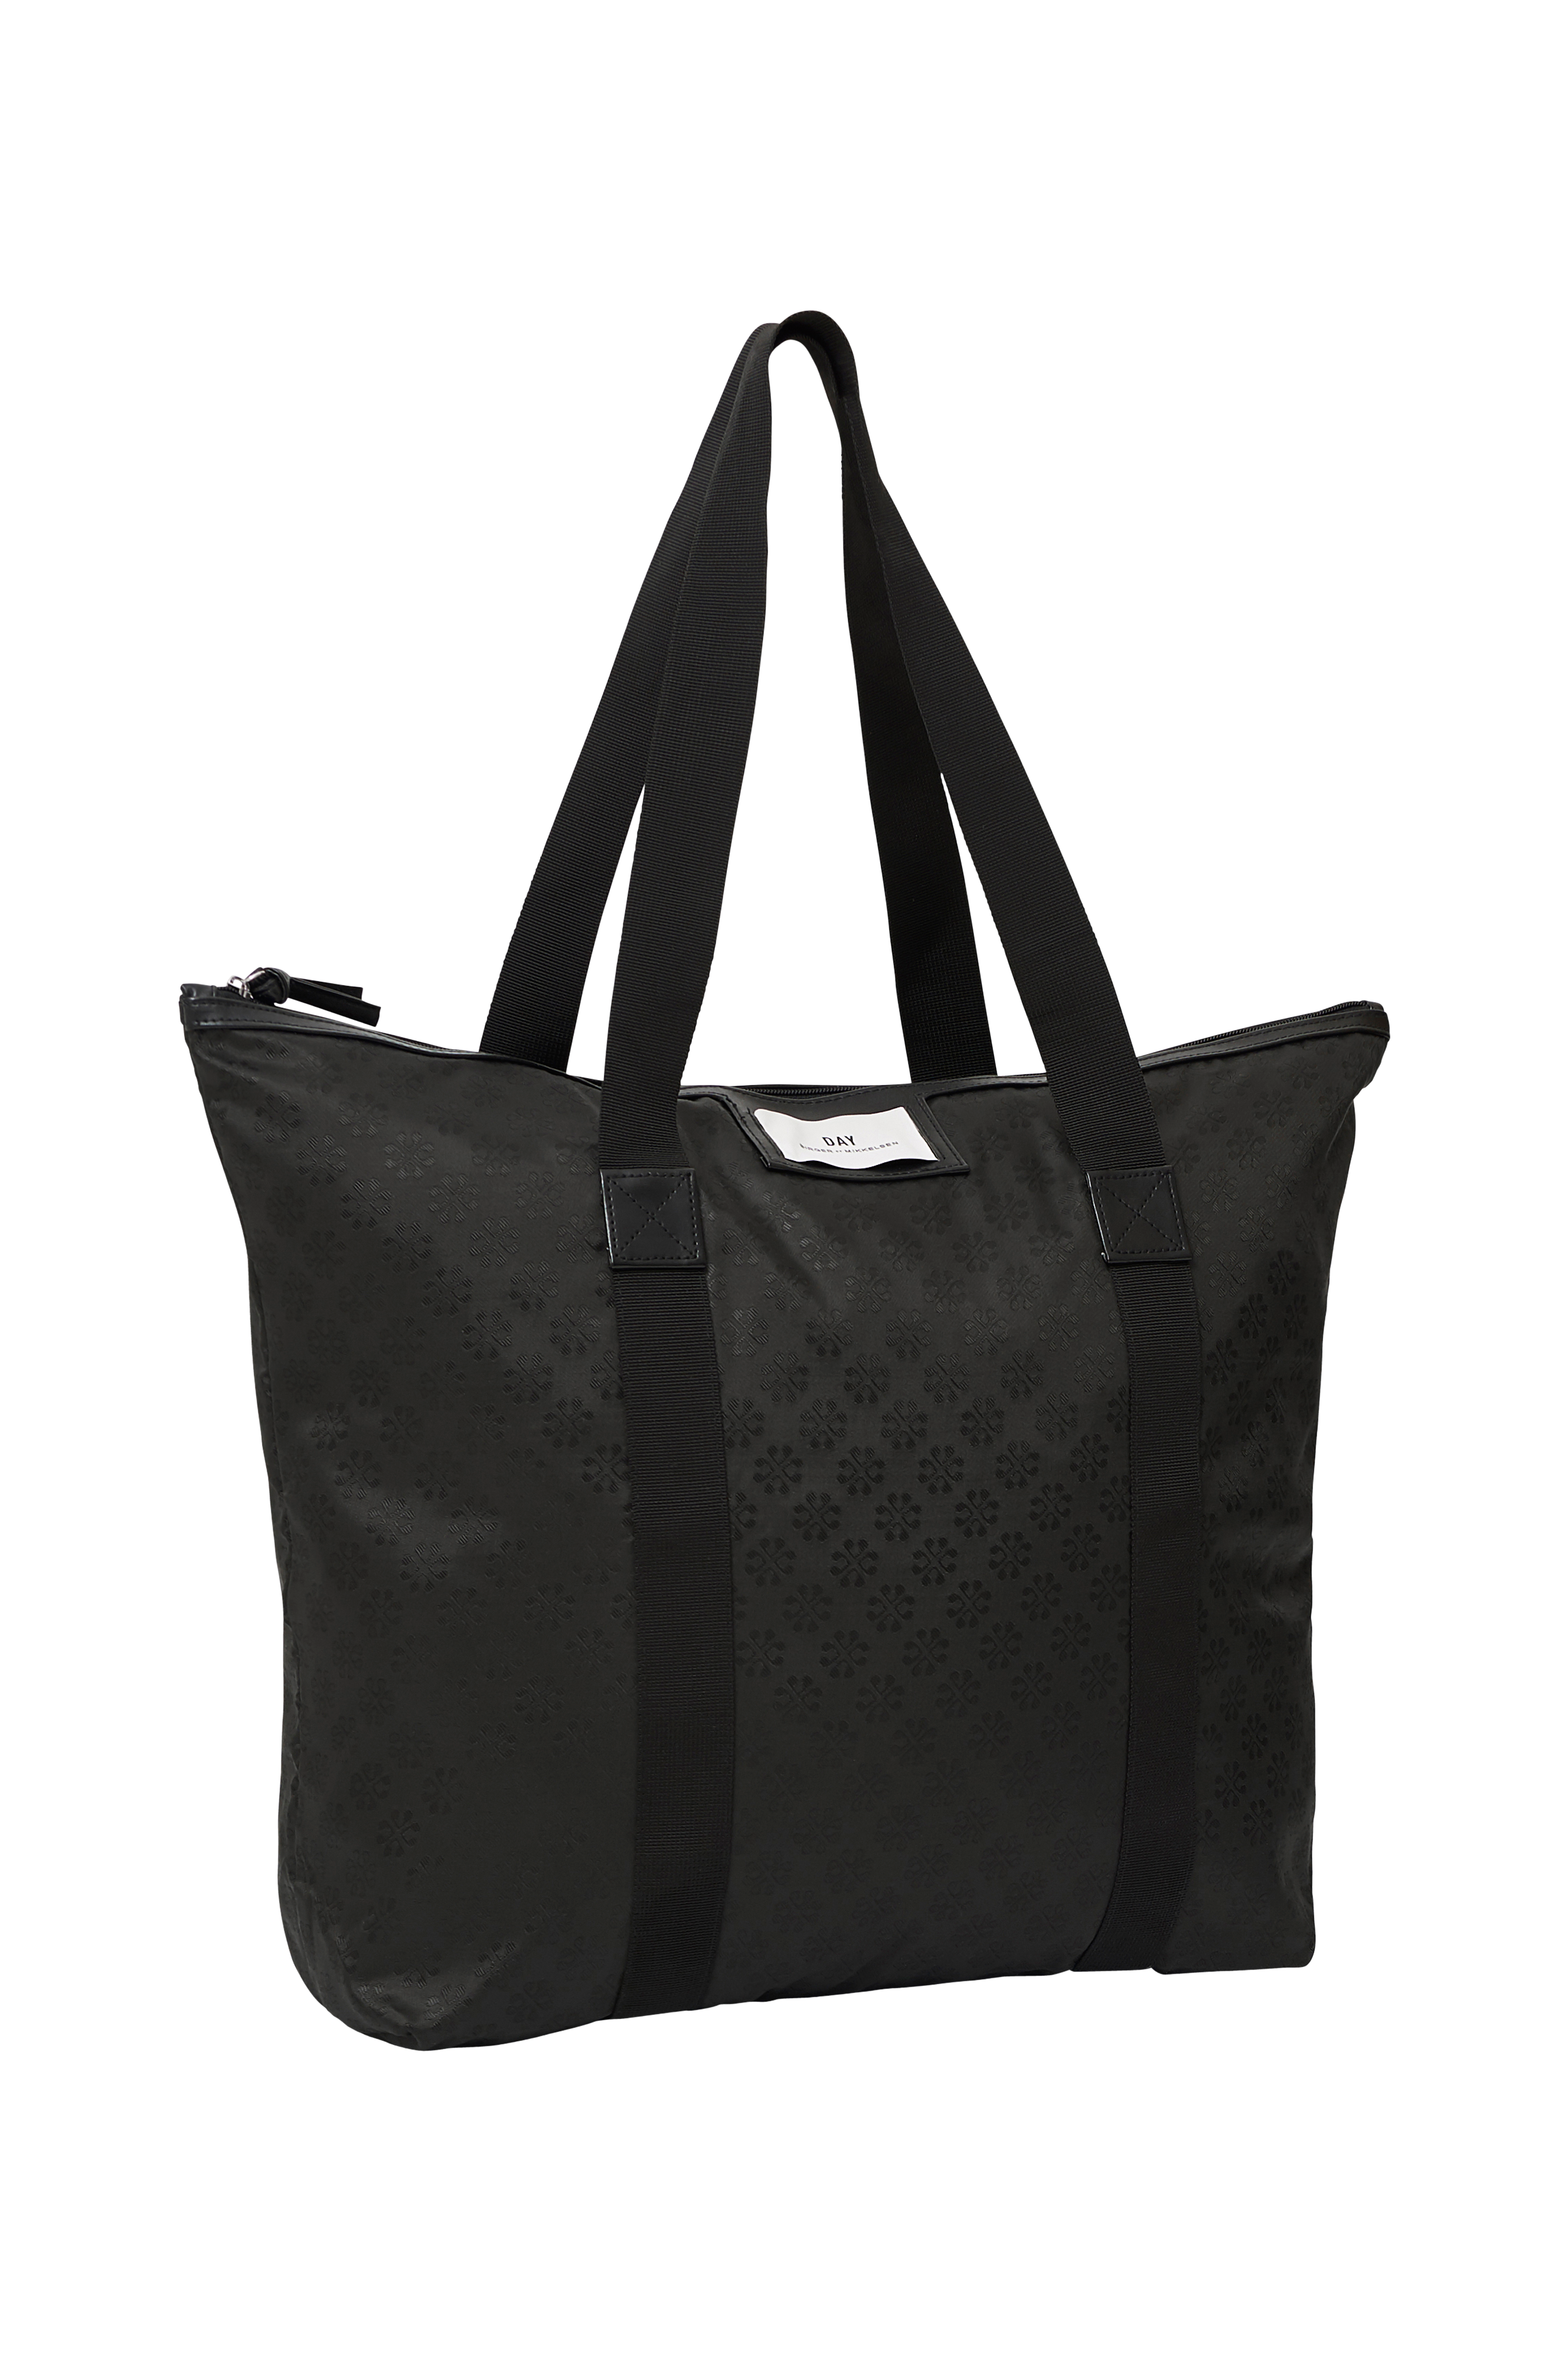 Taske Noir Bag Sort - Shoppingtasker | Ellos.dk